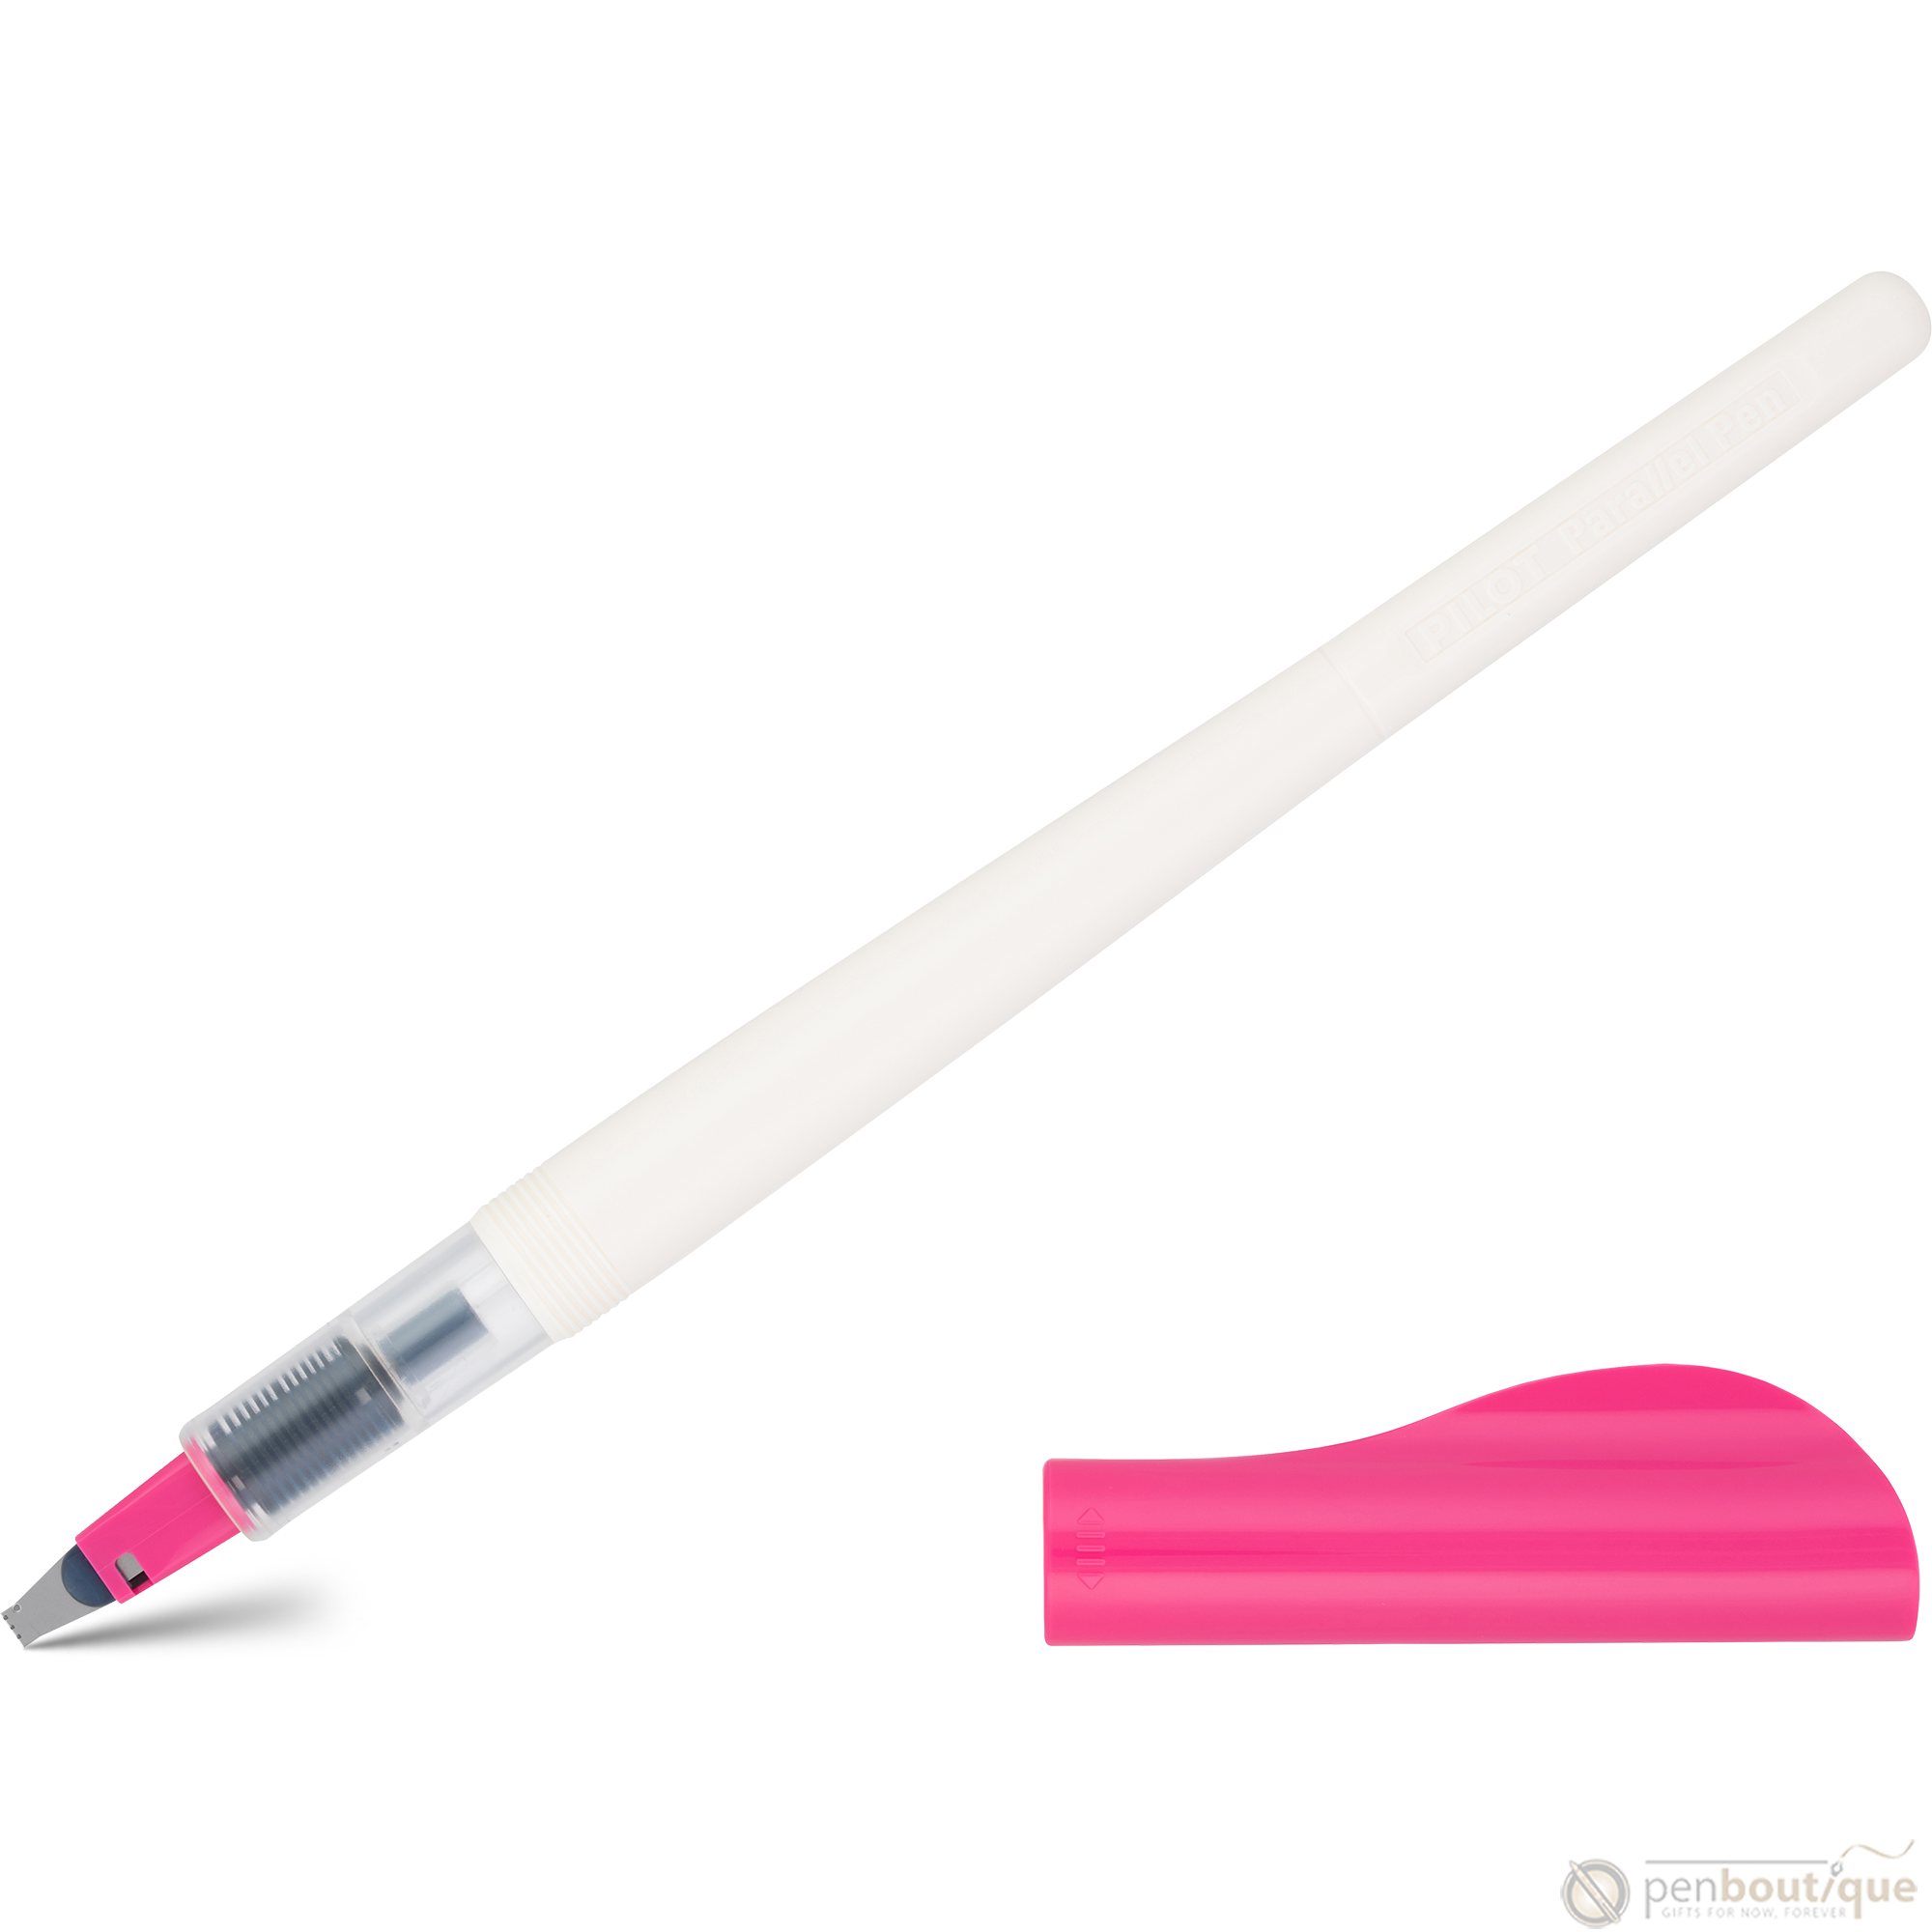 Pilot Parallel Fountain Pen - Pink - 3.0 mm-Pen Boutique Ltd